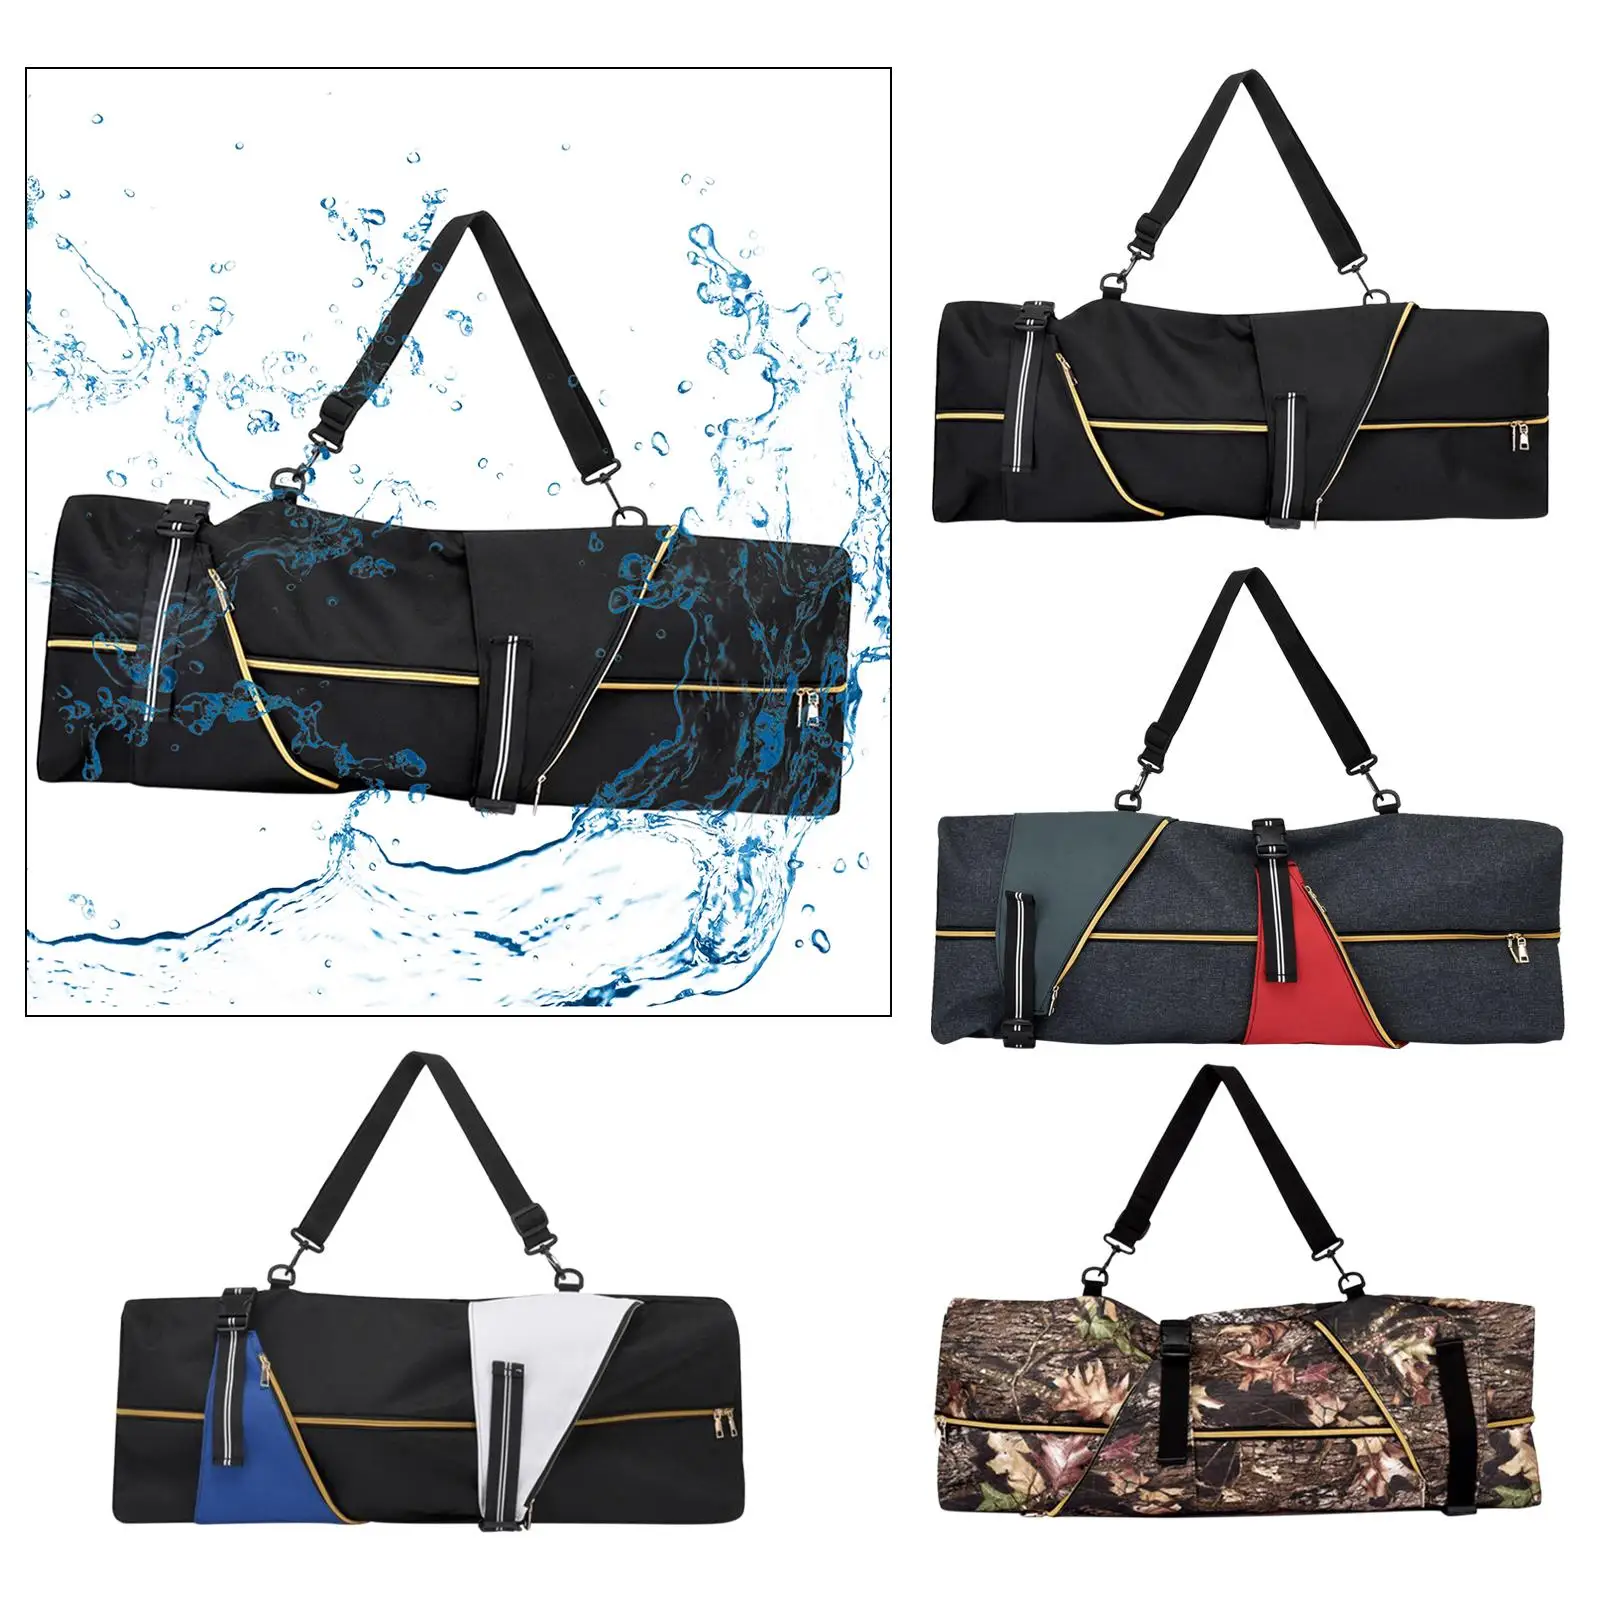 Skateboard Backpack Pouch Holder Storage Adjustable Straps Water Resistant Longboard Carrier Bag Skateboard Carry Bag for Women